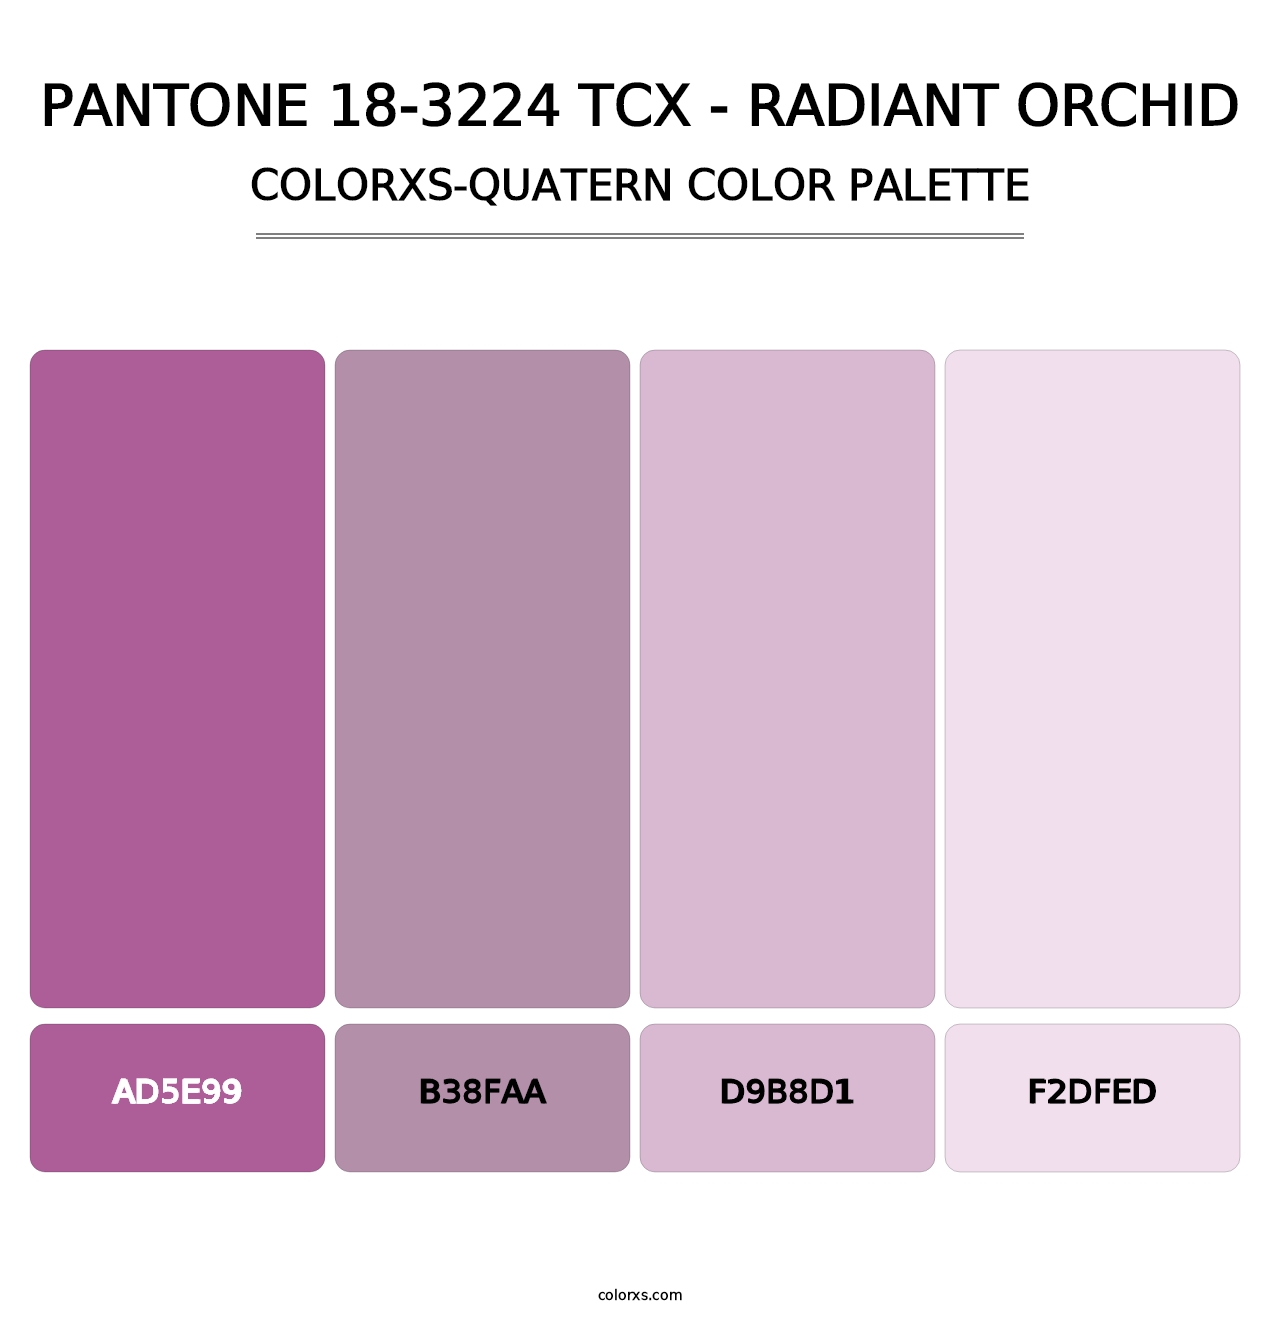 PANTONE 18-3224 TCX - Radiant Orchid - Colorxs Quatern Palette